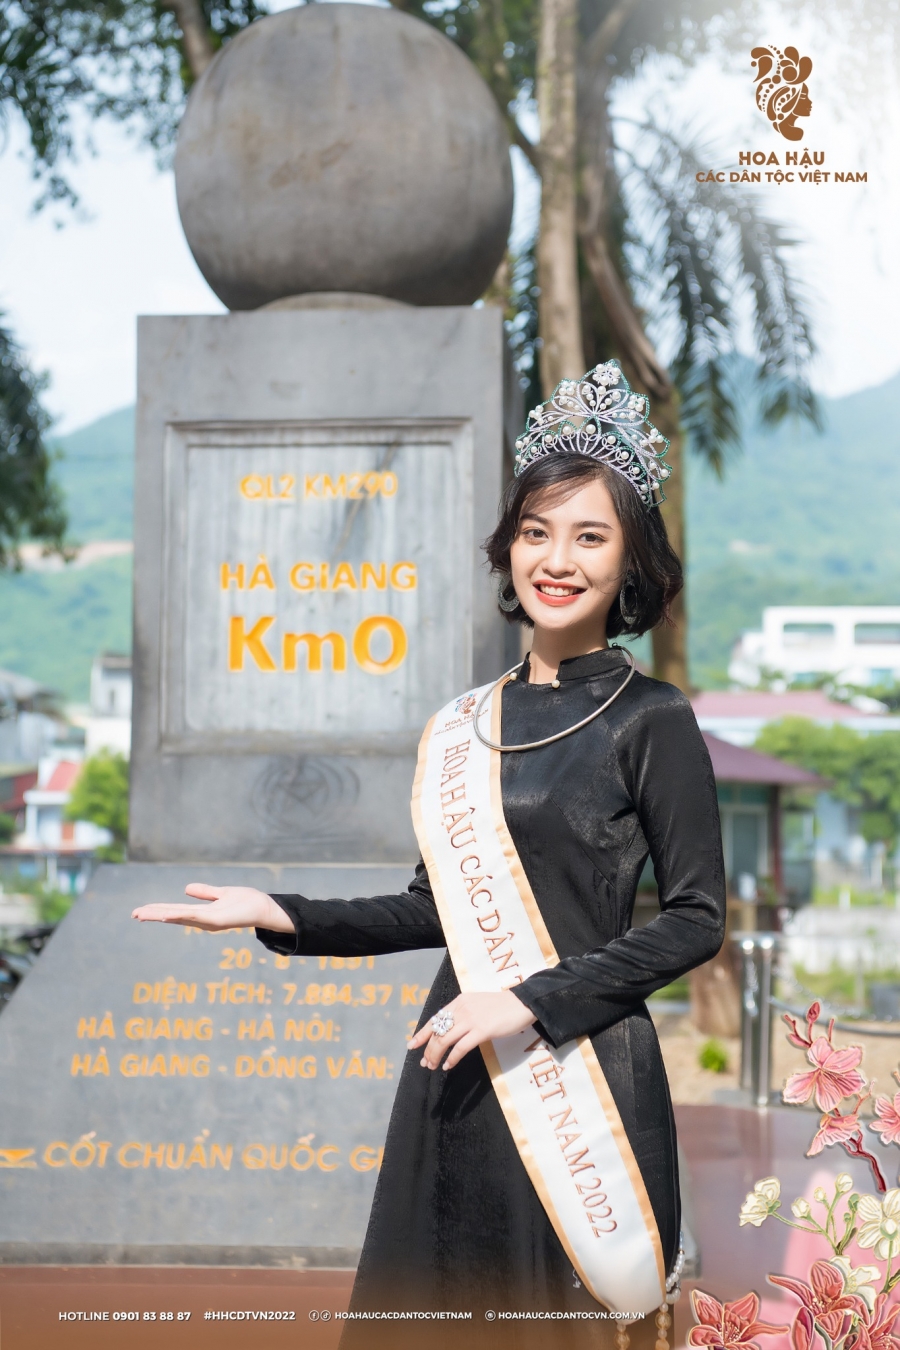 Hoa hậu các Dân tộc Việt Nam - Nông Thuý Hằng